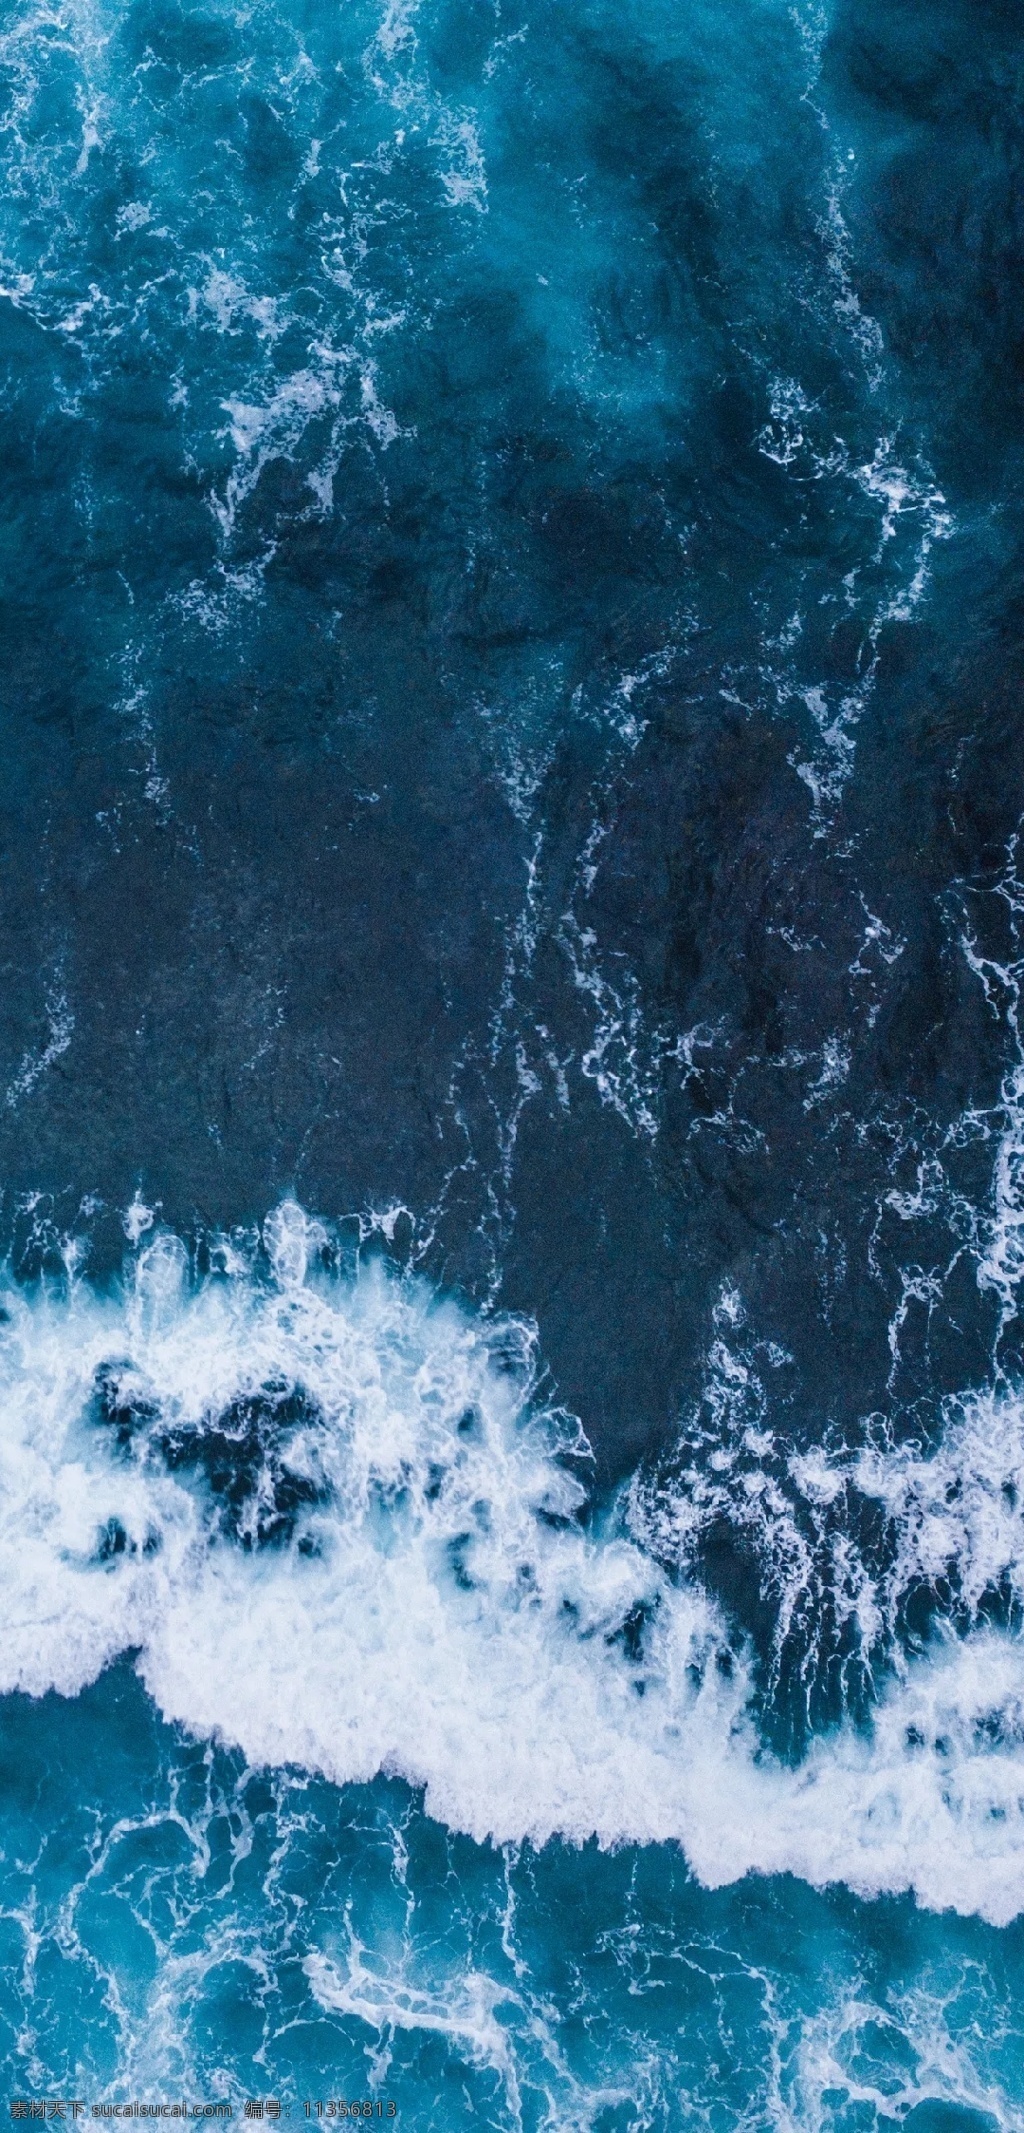 海面波浪 蓝海波浪 自然景观 水 水面 水平面 海面 大海 海 海浪 海平面 蓝色海 蓝海 波浪 水波 水波浪 纹路 水纹路 海纹路 混合 自然 景 手机 高清 桌布 自然风景